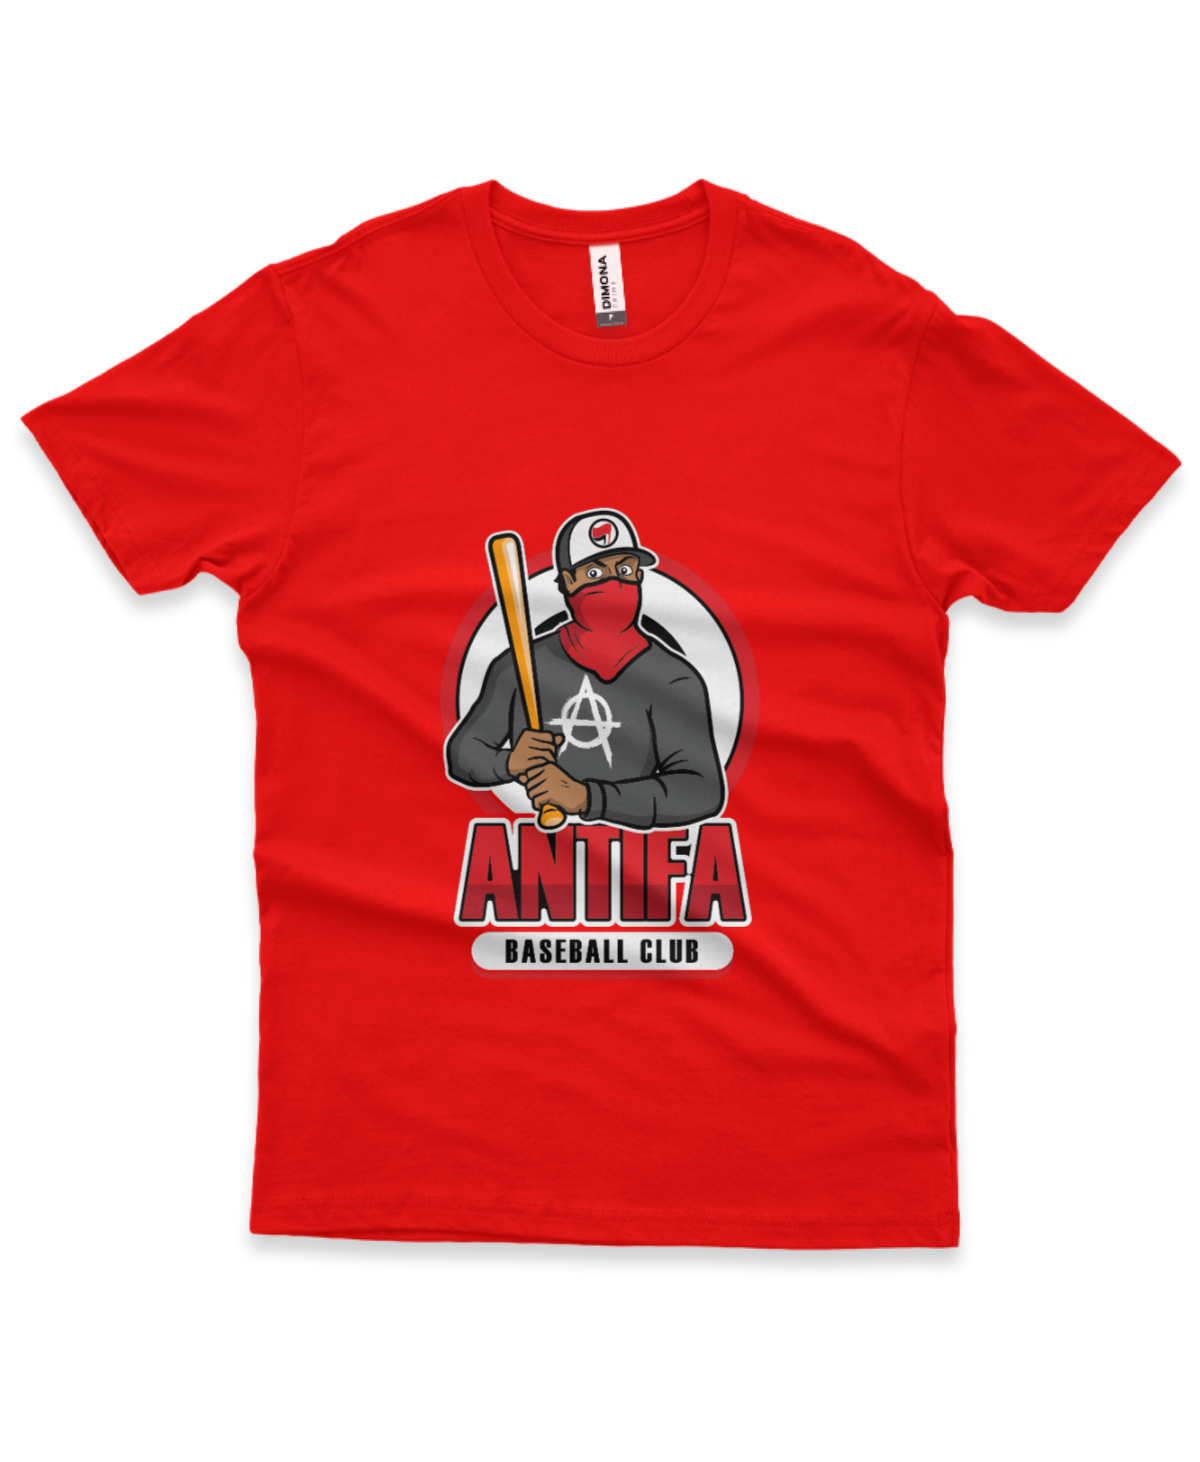 camiseta masculina cor vermelha com ilustração de homem mascarado e frase antifa baseball club